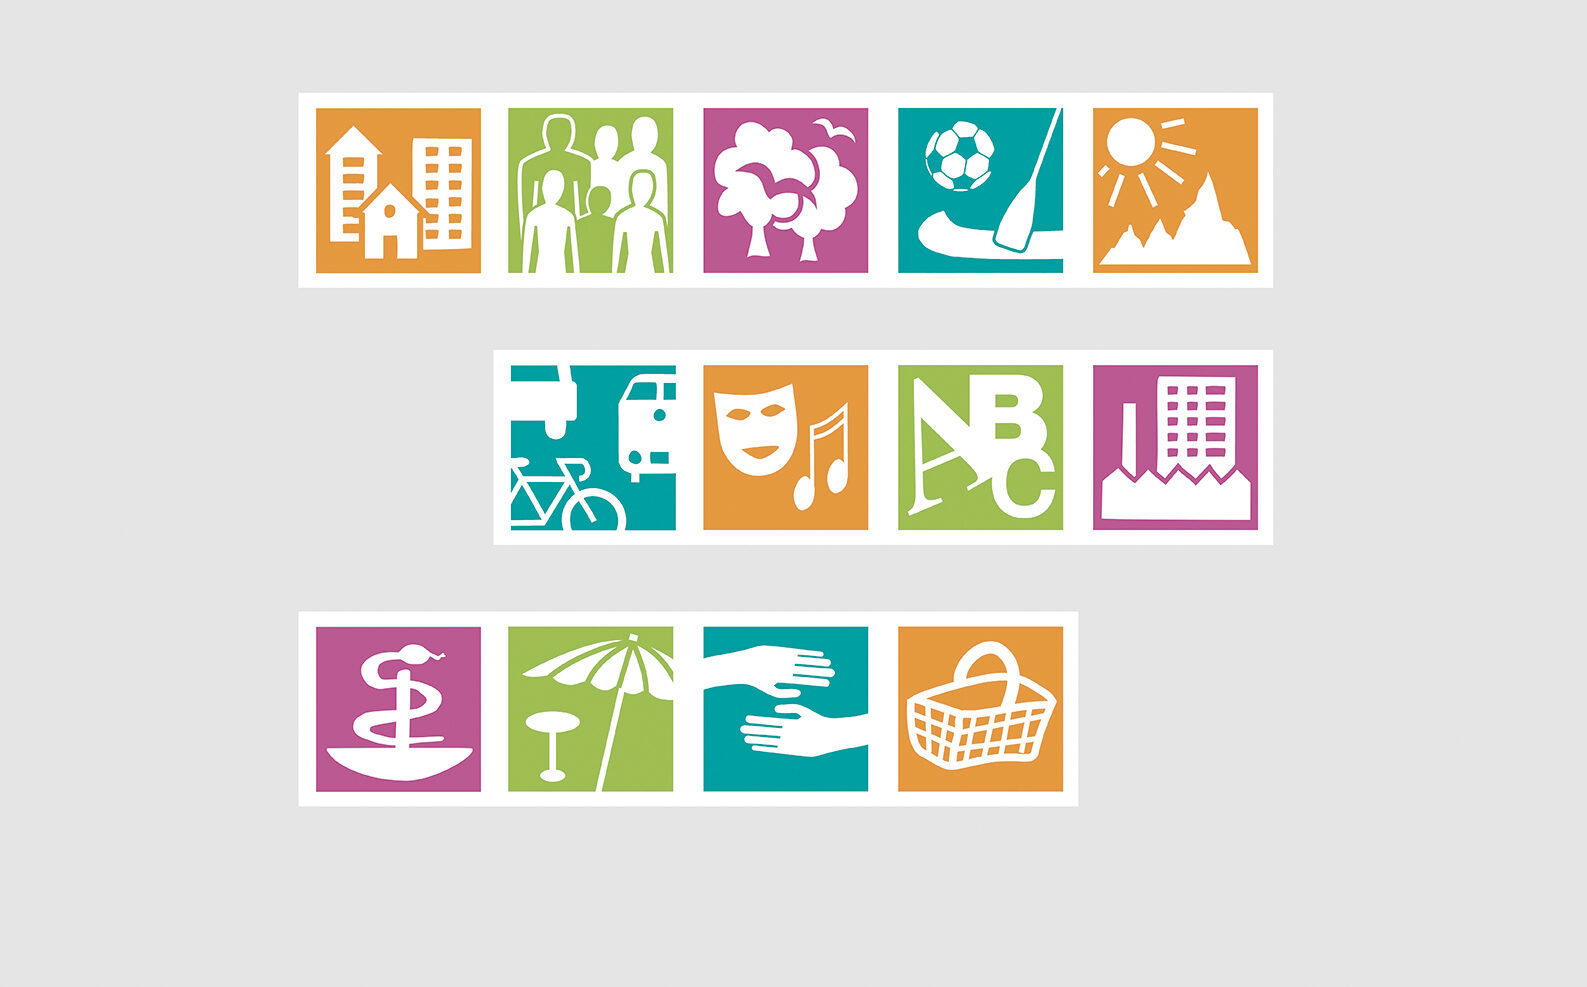 Piktogramme: Wohnen, Zusammenleben, Grün, Sport, Umwelt, Verkehr, Kultur, Bildung, Industrie, Medizin, Freizeit, Soziales, Nahversorgung